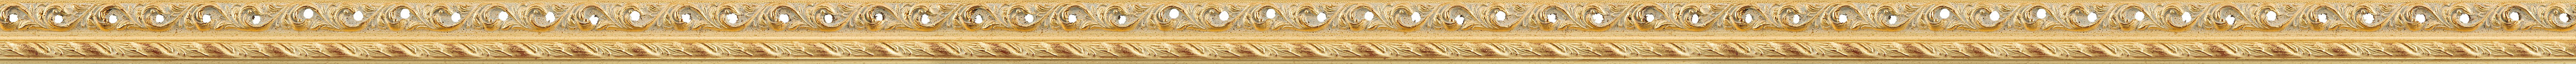 Αntique gold leaf frame frame